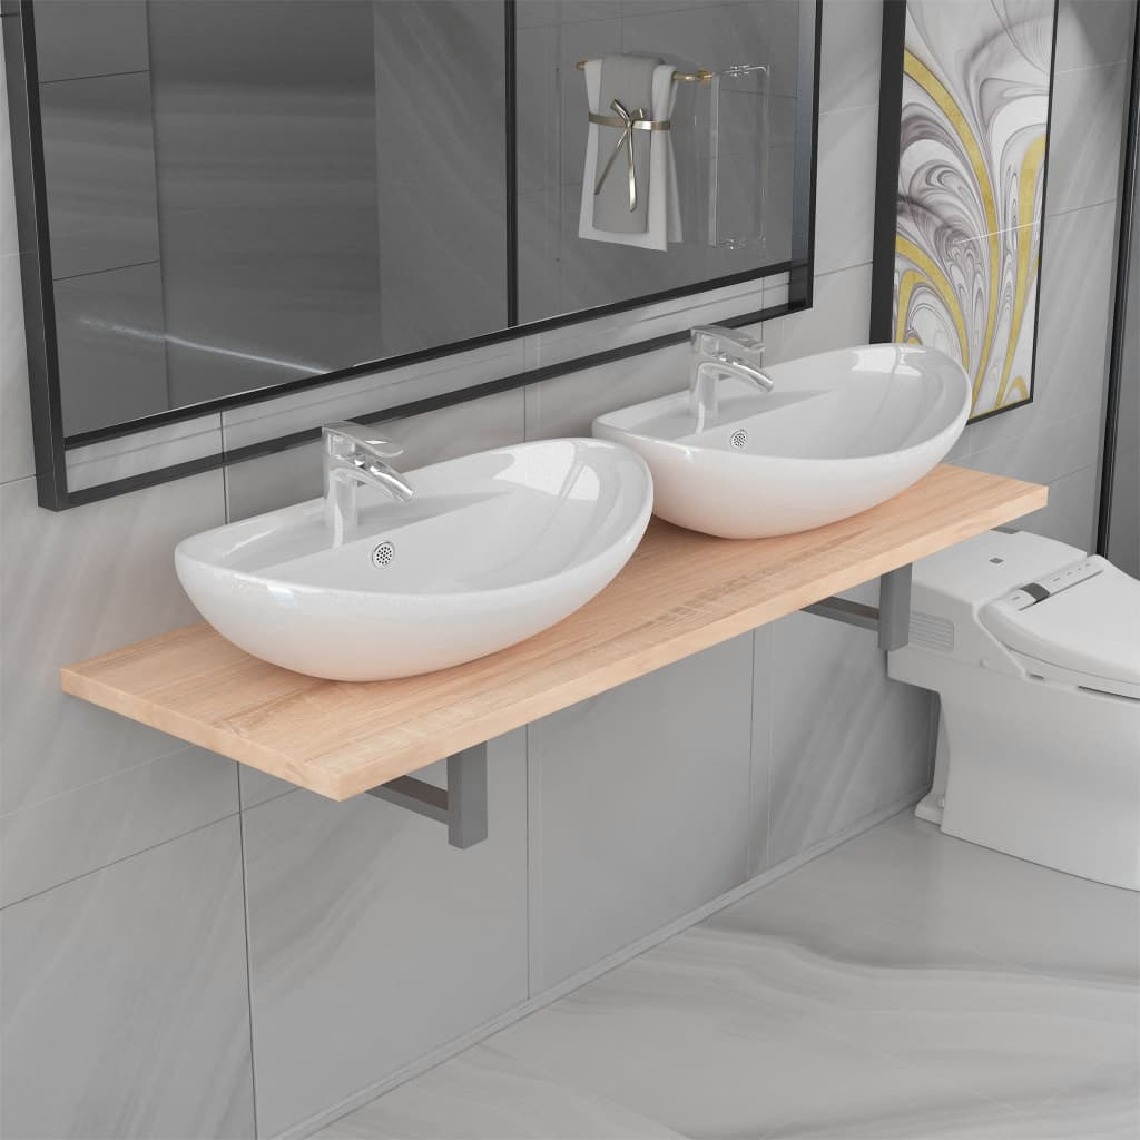 Chunhelife - Meuble de salle de bain à 3 pcs Céramique Chêne - meuble bas salle de bain